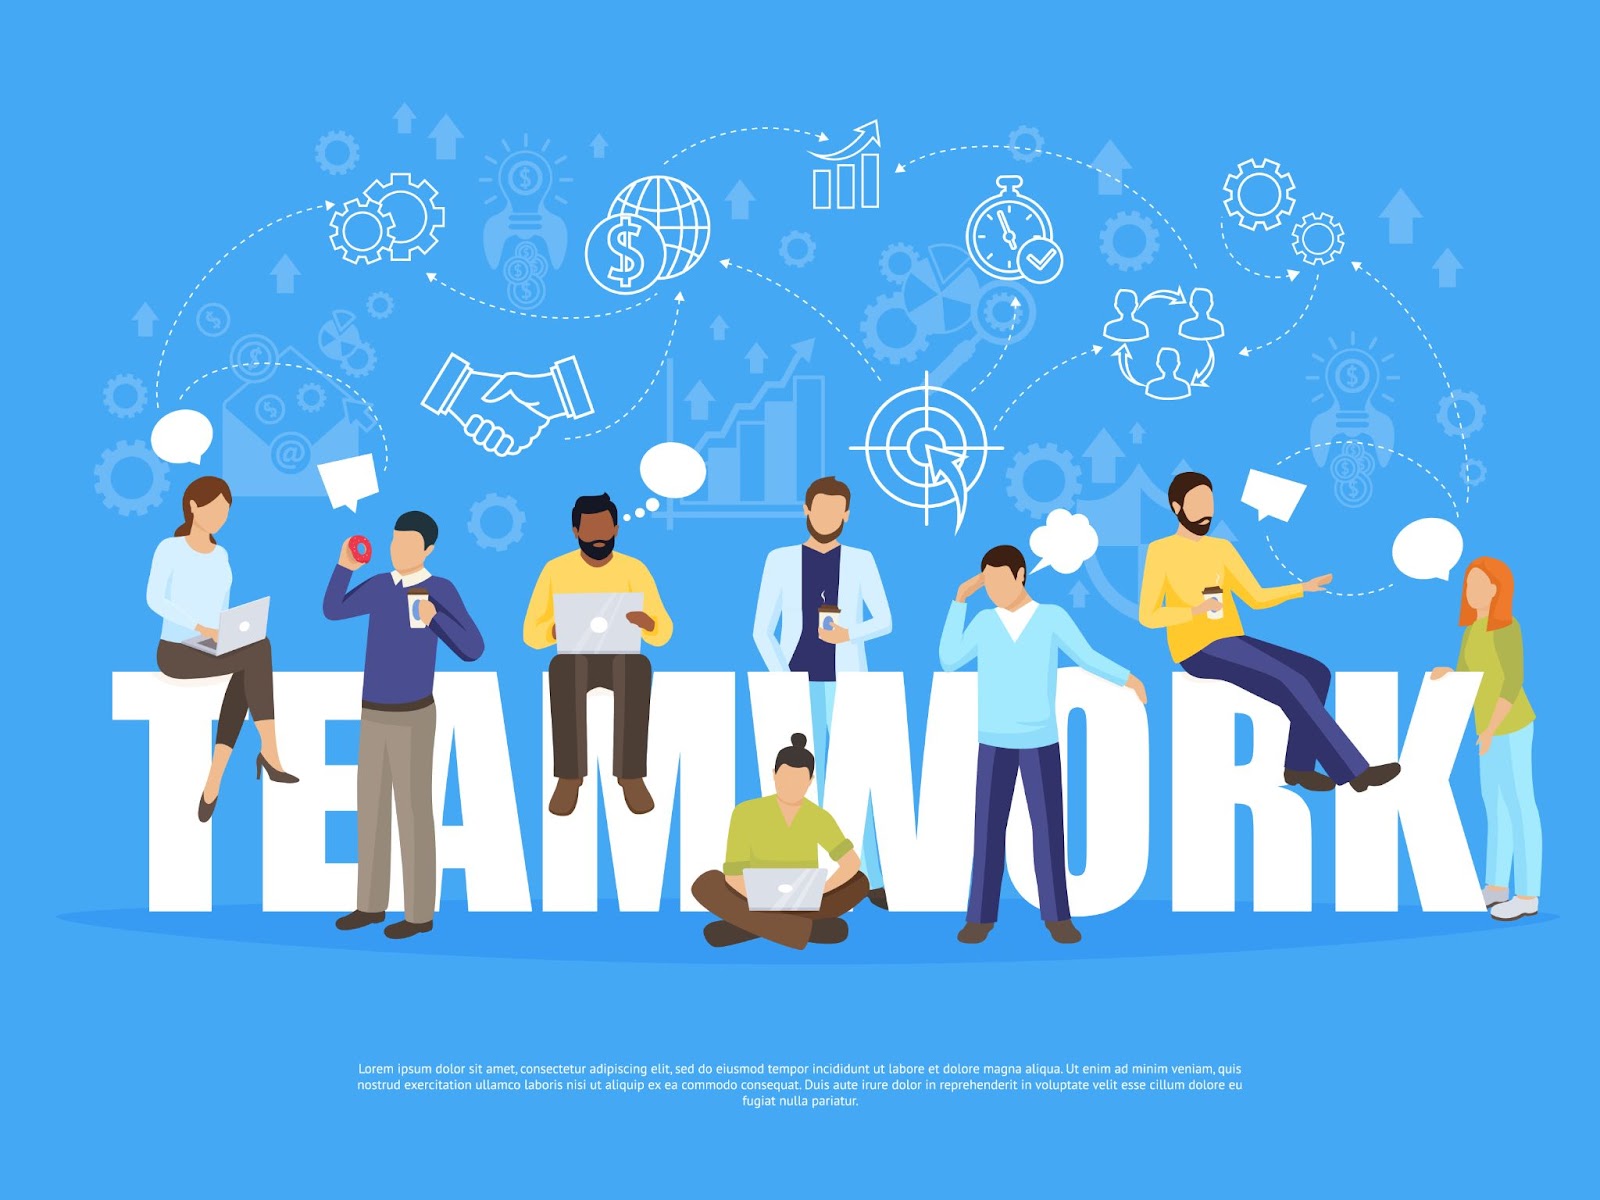 Teamwork illustration for business plan image